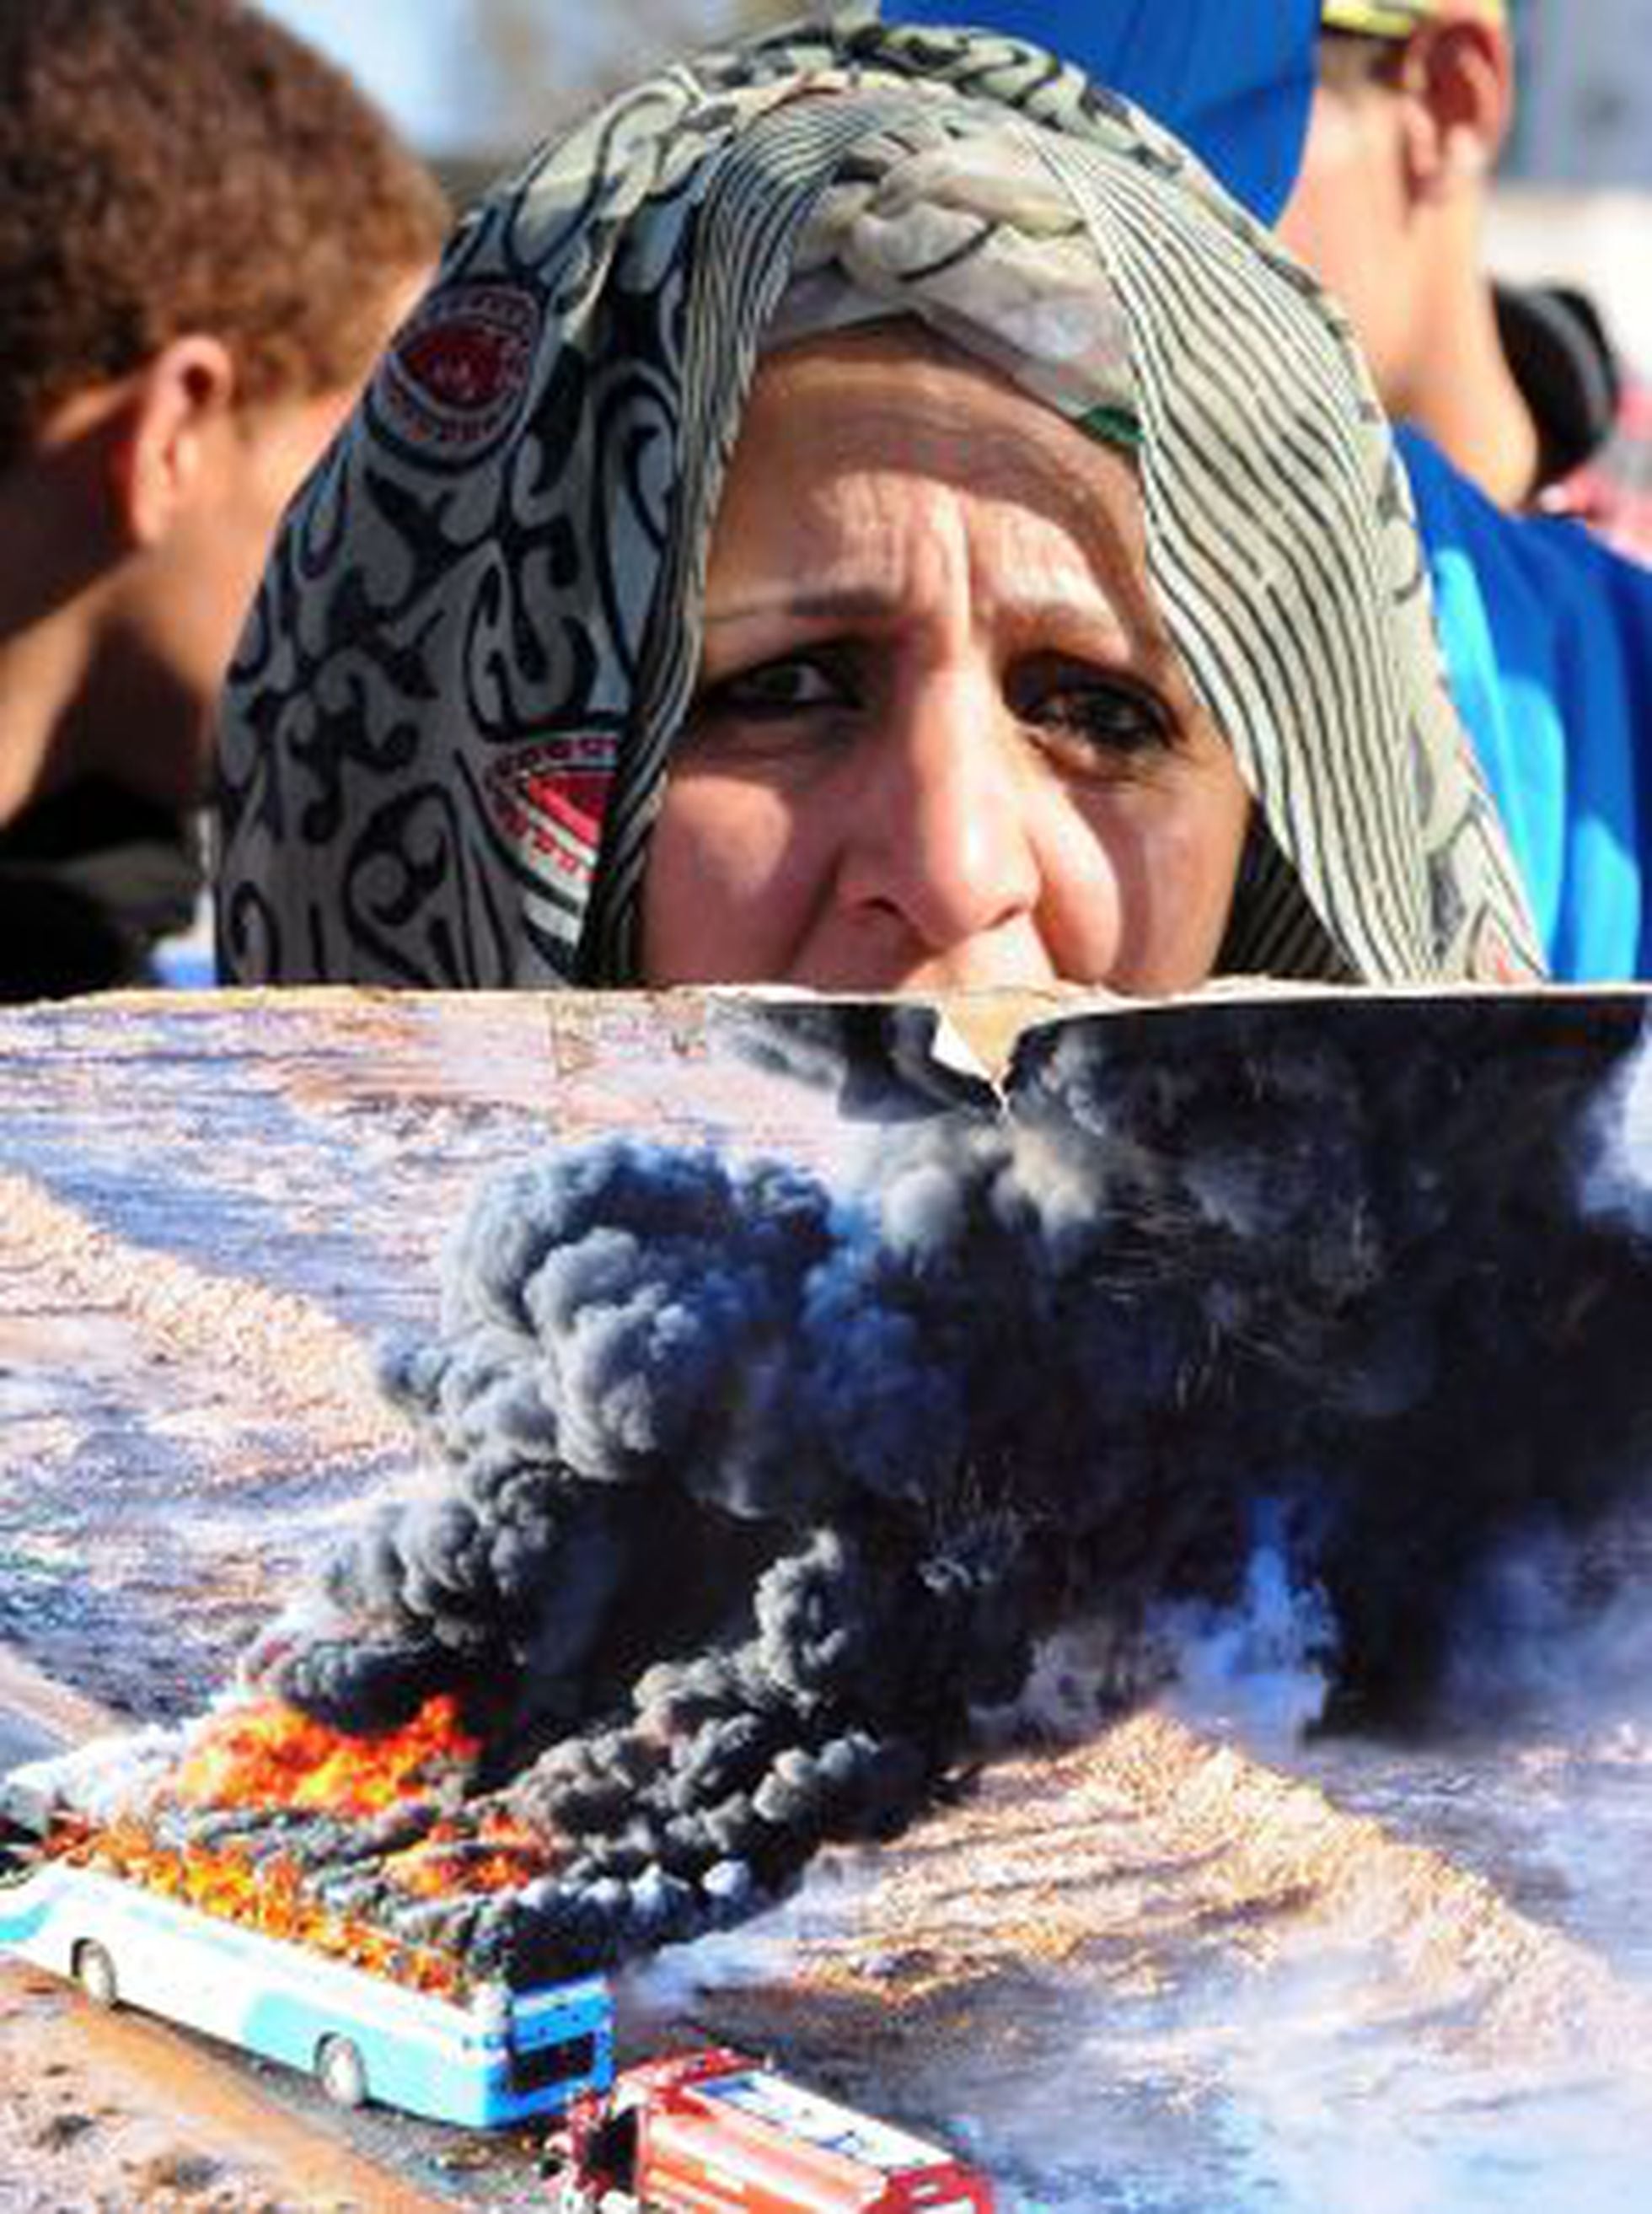 Sahara Occidental: Represión de Marruecos contra la población. - Página 3 7PNK3MJLPYULBMLVCU7CXMJOBY